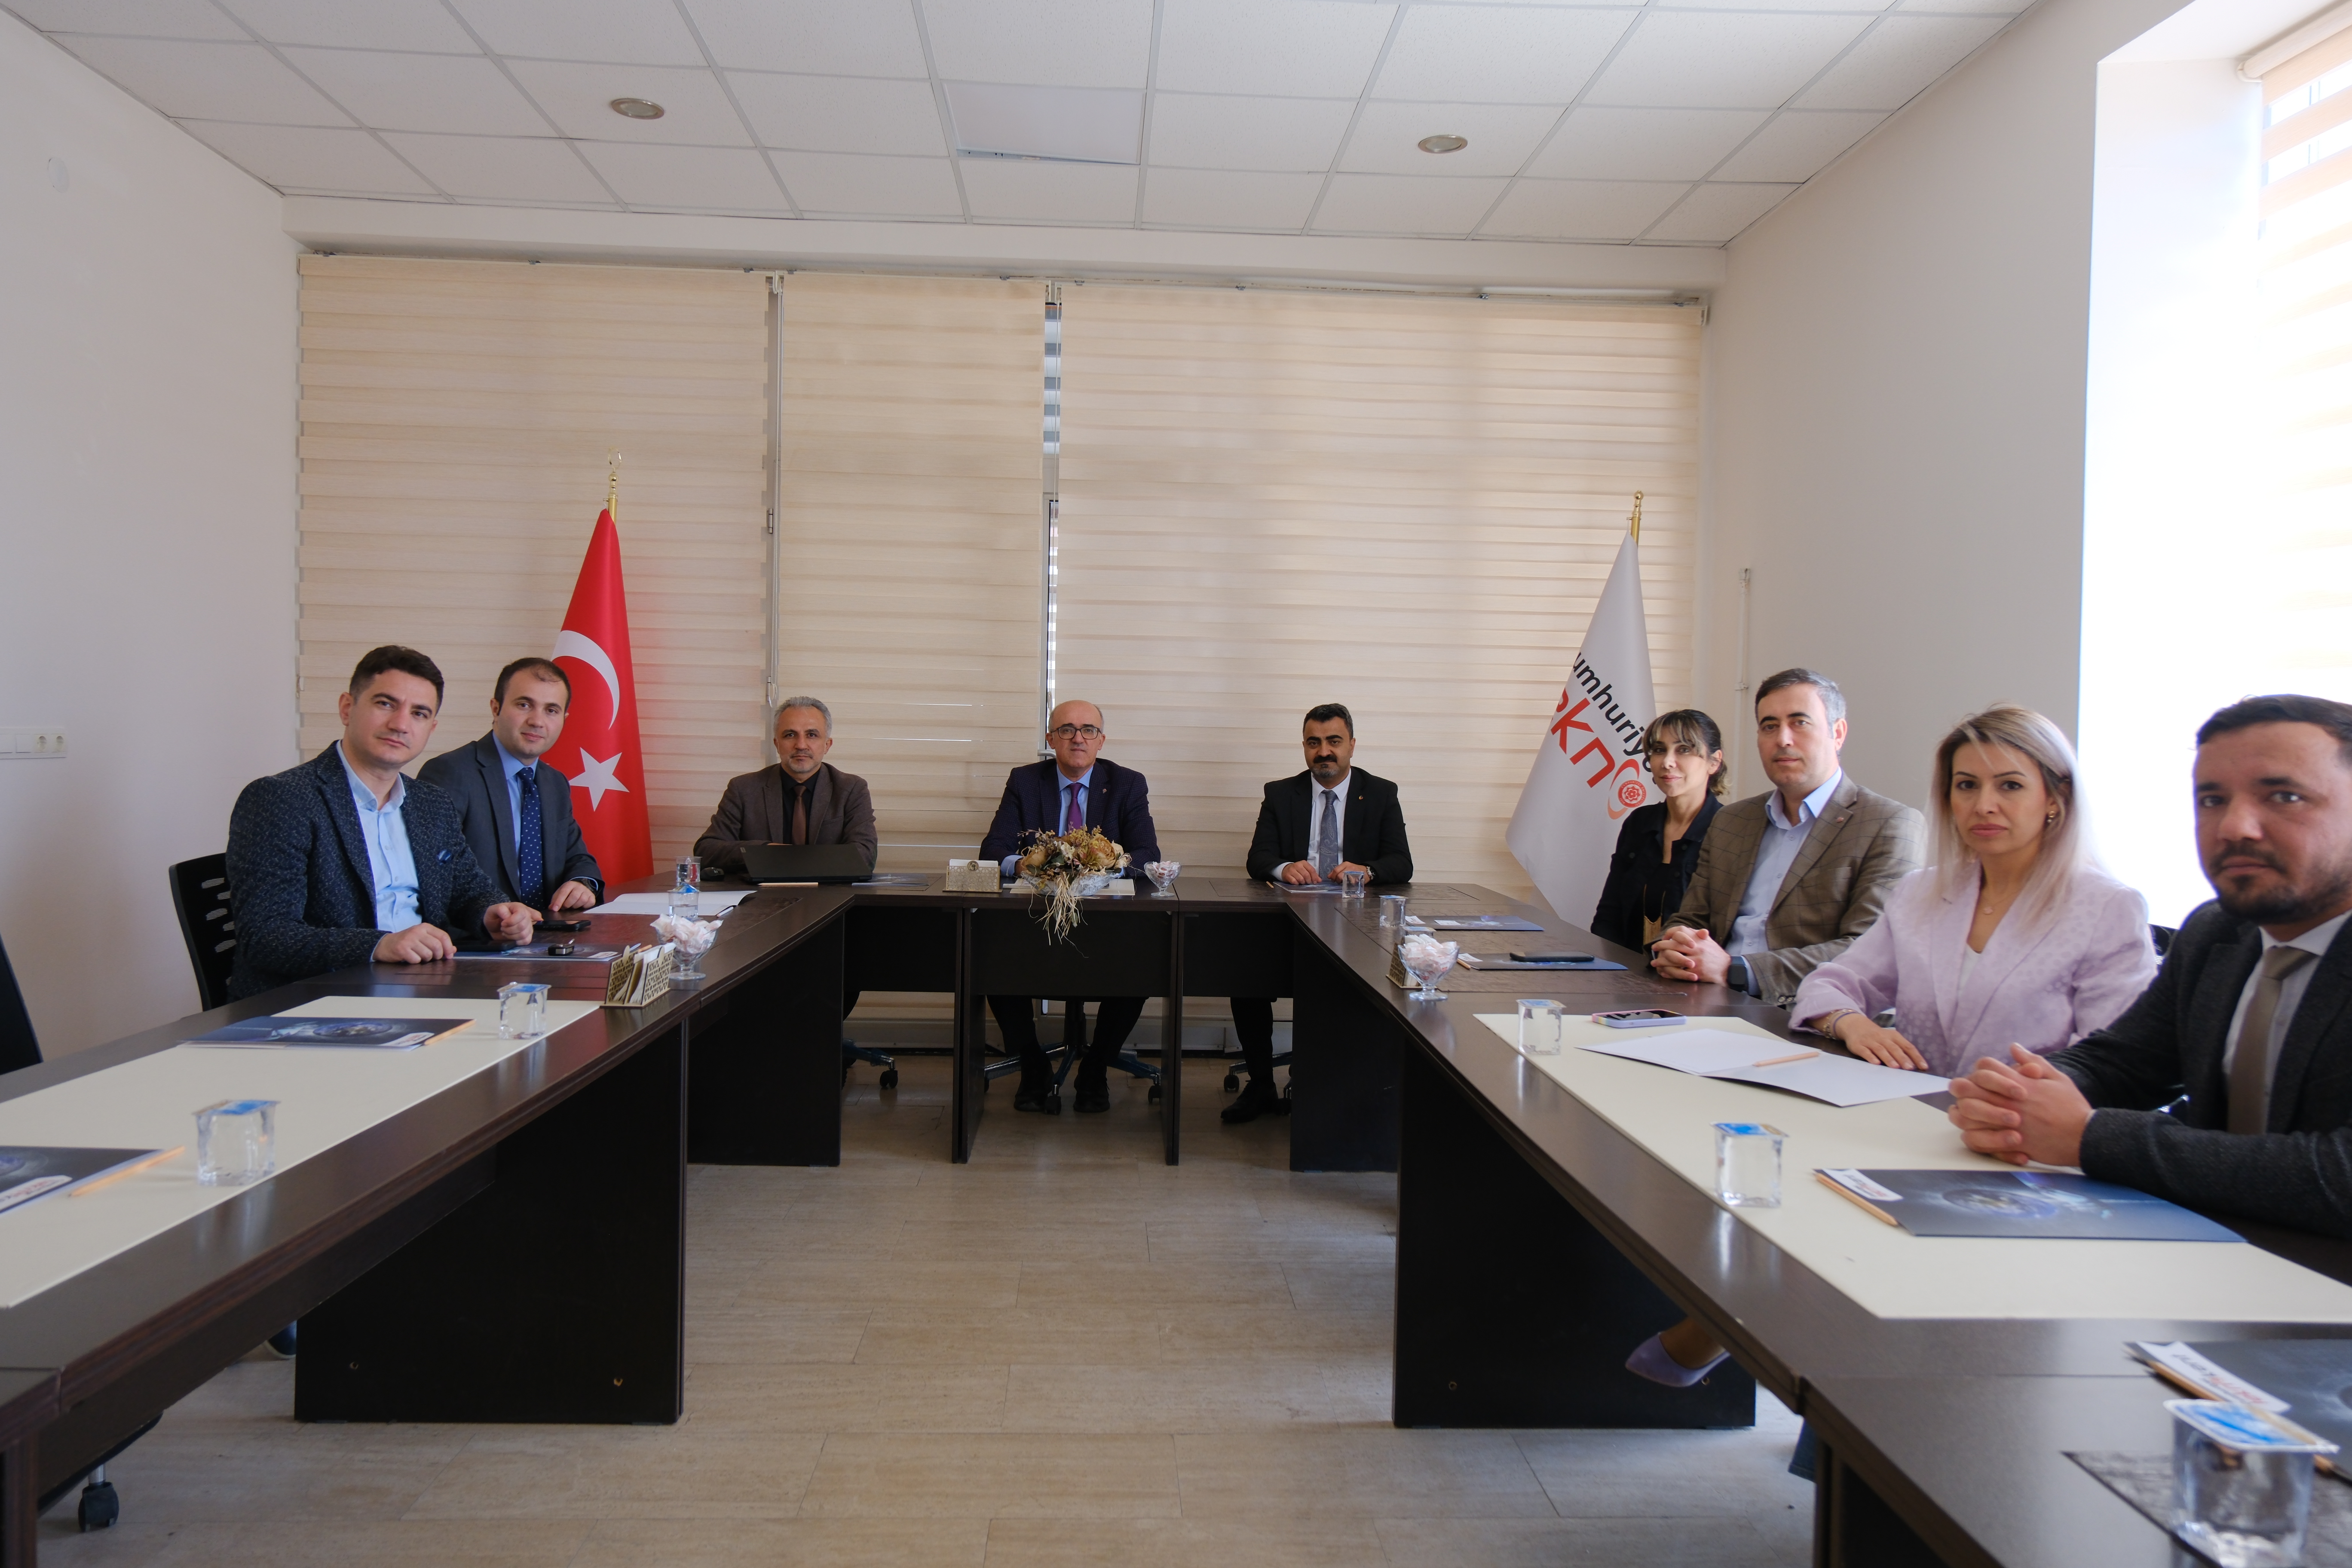 TÜBİTAK TEYDEB Başkan Yardımcısı Sayın Dr. Hasan Selçuk SELEK, Teknokent'i ve firmalarımızı ziyaret etti.